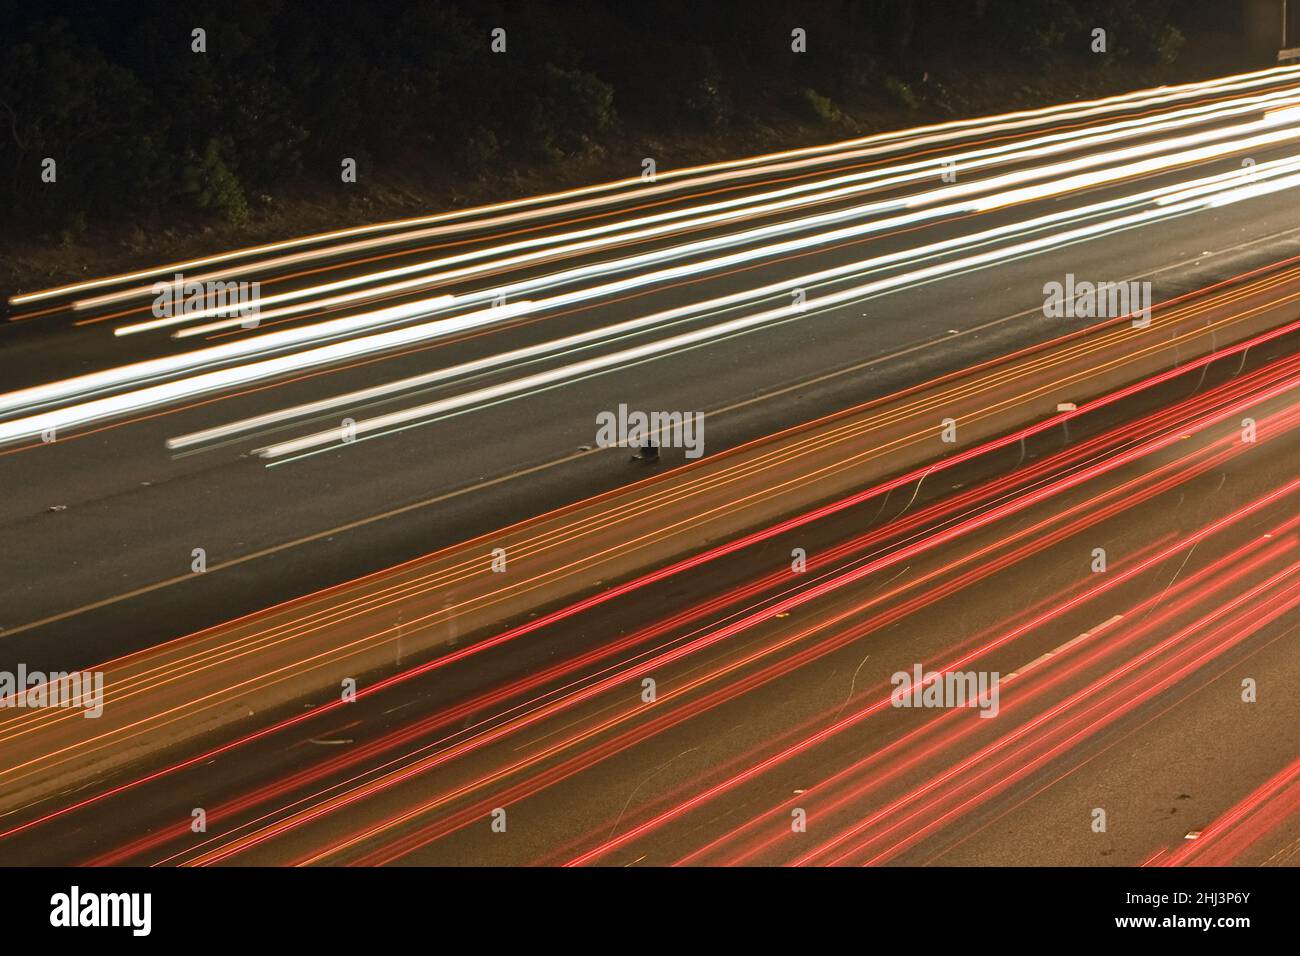 La superstrada dorata di notte fuori dalle linee laterali. Esposizione più lunga, traffico a nord e a sud catturato Foto Stock